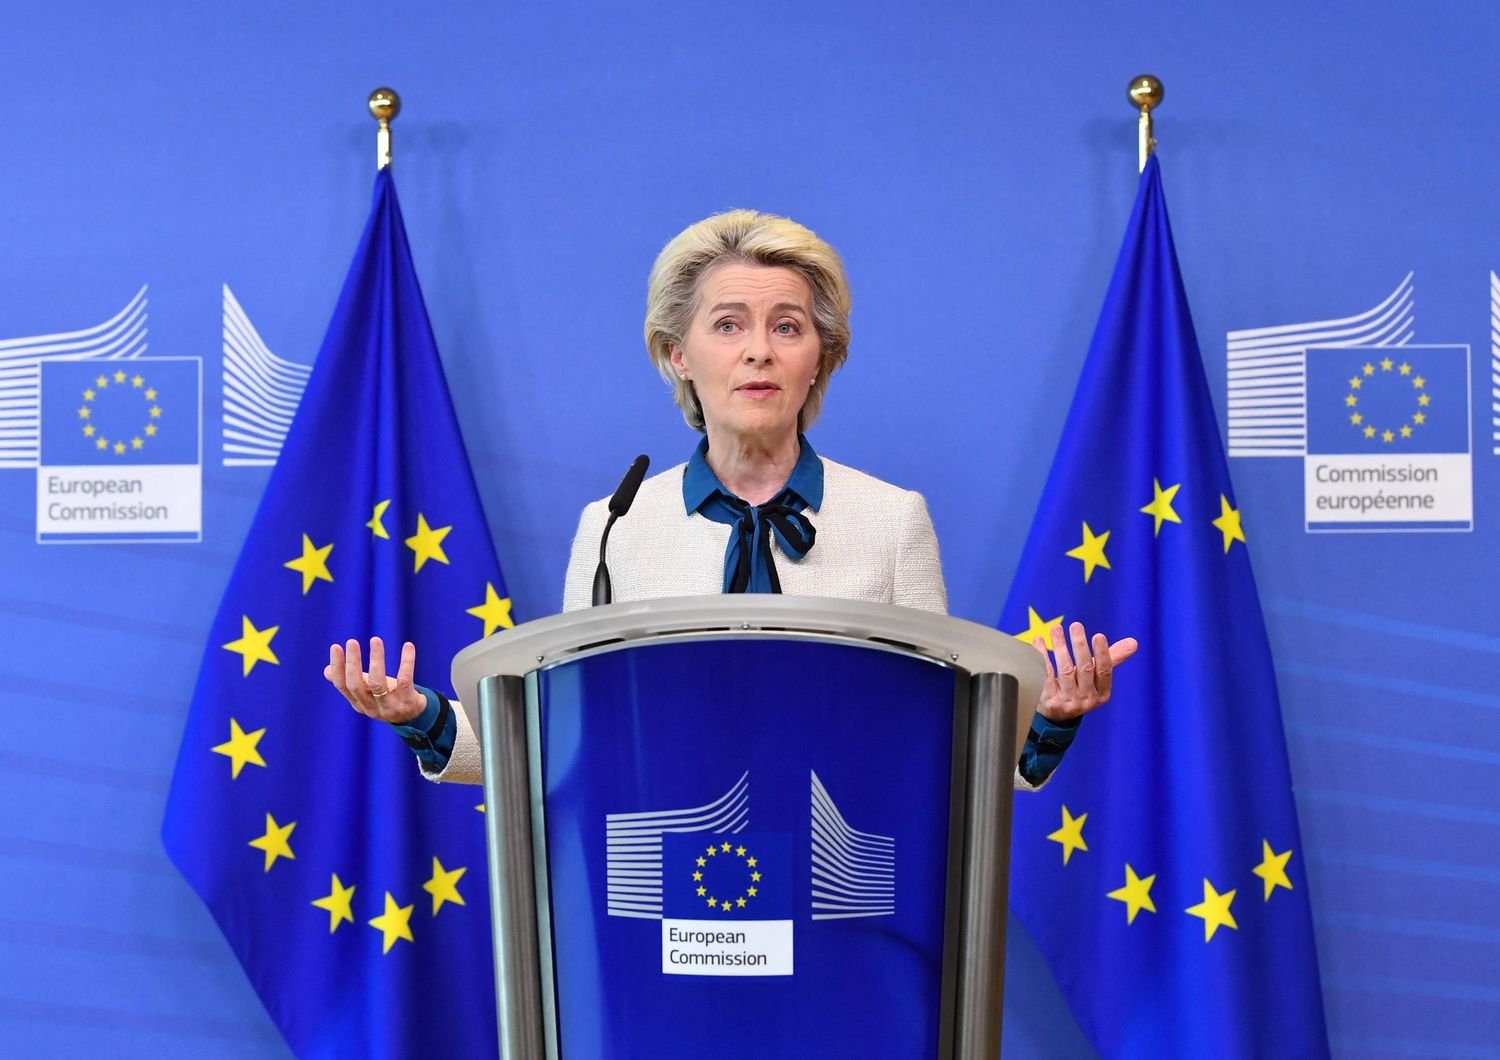 La presidente della Commissione Europea Ursula von der Leyen &nbsp;